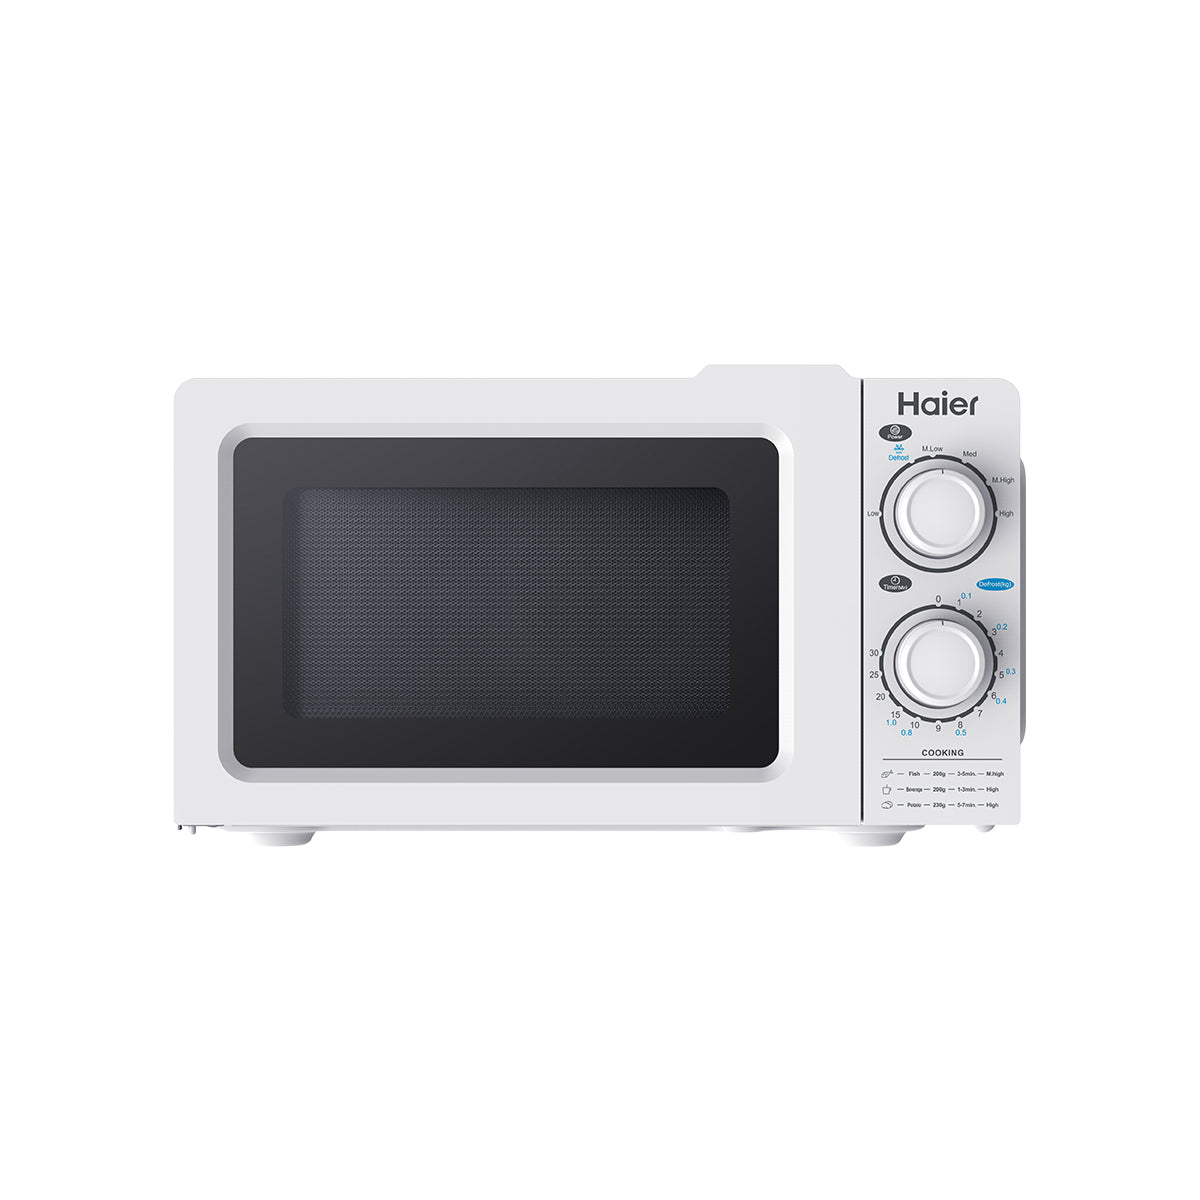 Haier Kitchen Appliances Microwave - HGL- 20MXP7 - 20 Ltr.